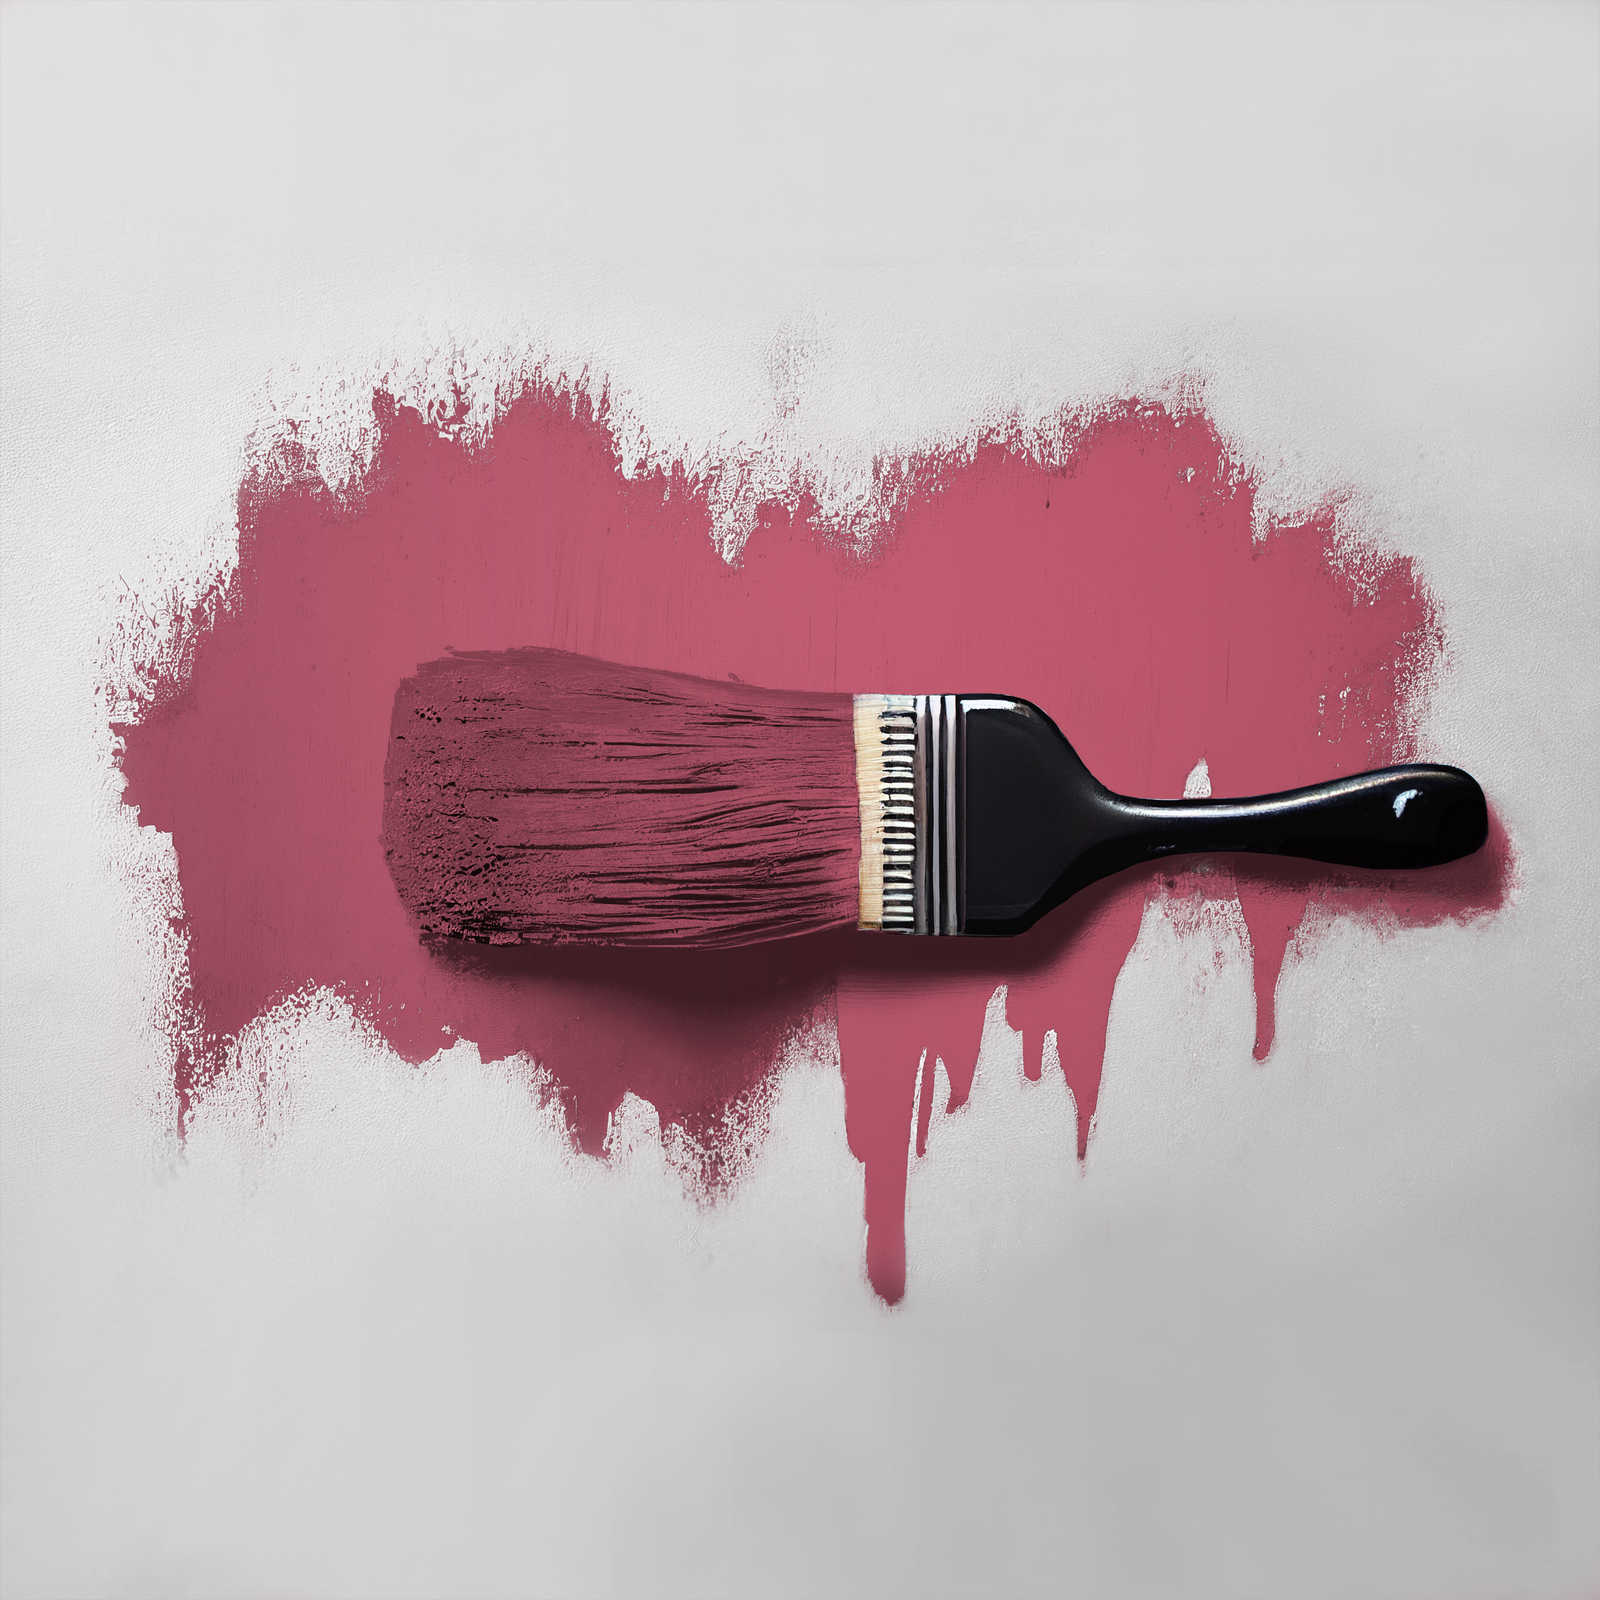             Pintura mural TCK7011 »Rosy Raspberry« en rosa oscuro intensivo – 5,0 litro
        